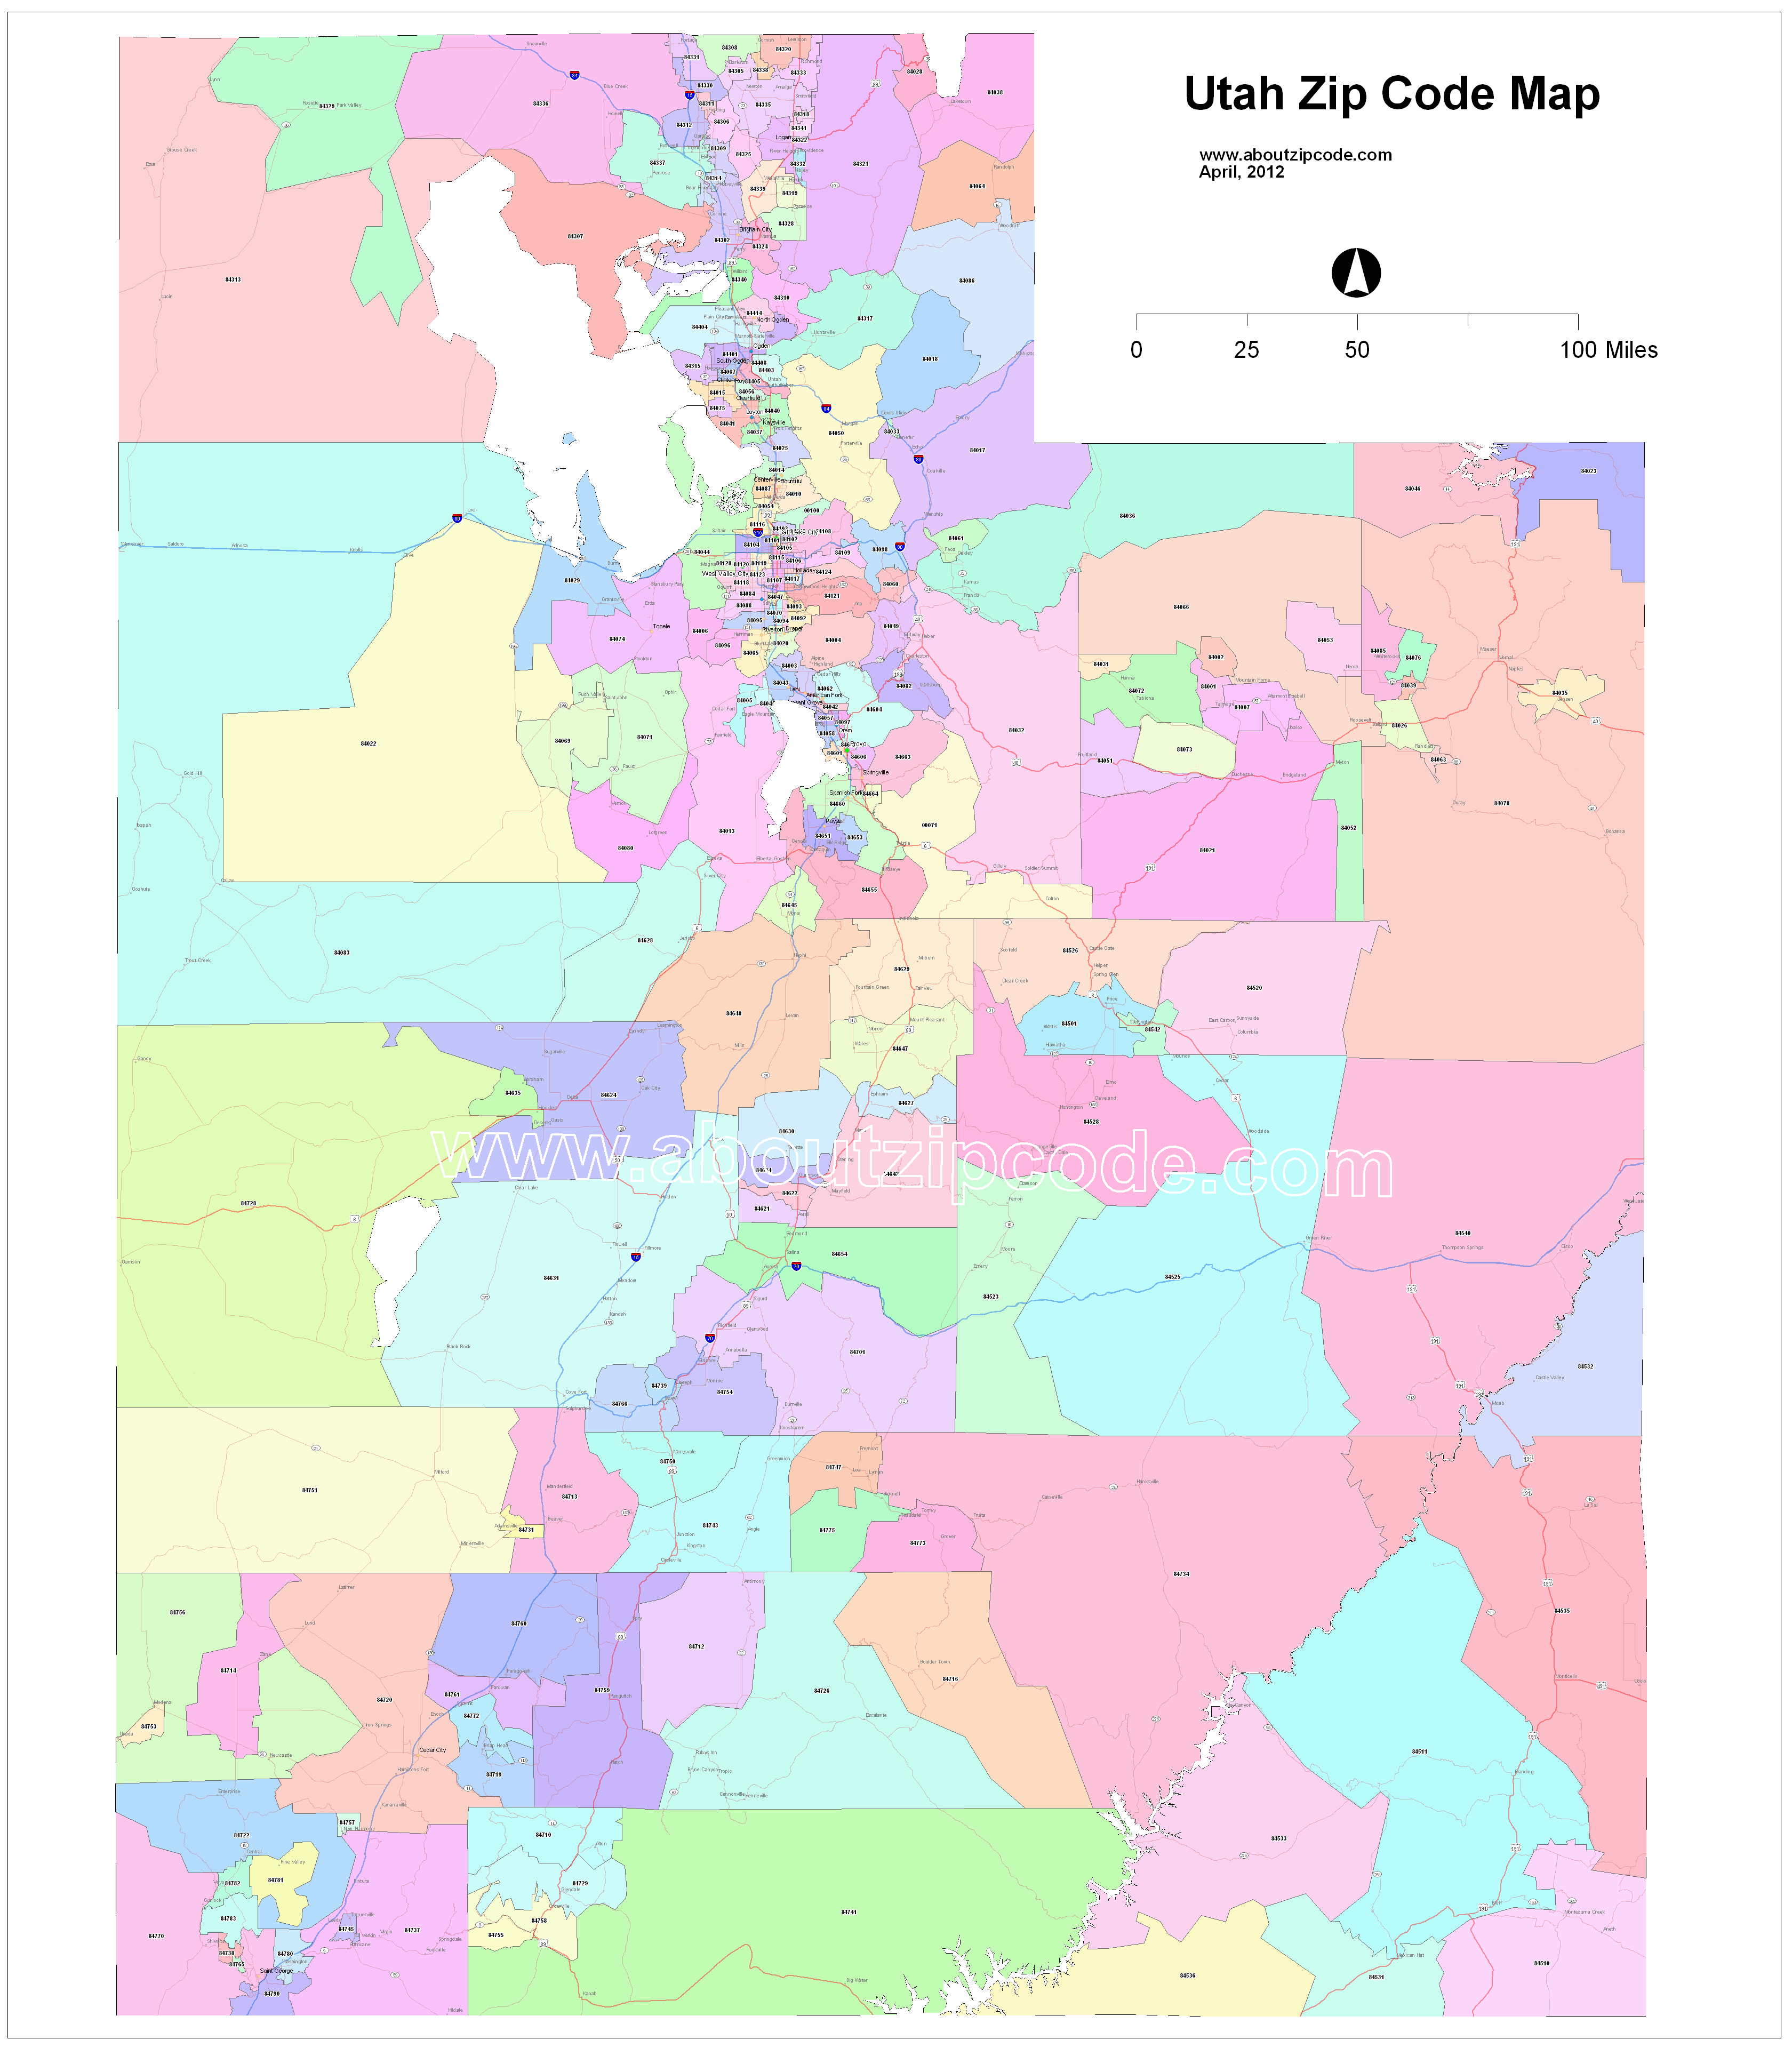 Utah Zip Code Maps Free Utah Zip Code Maps